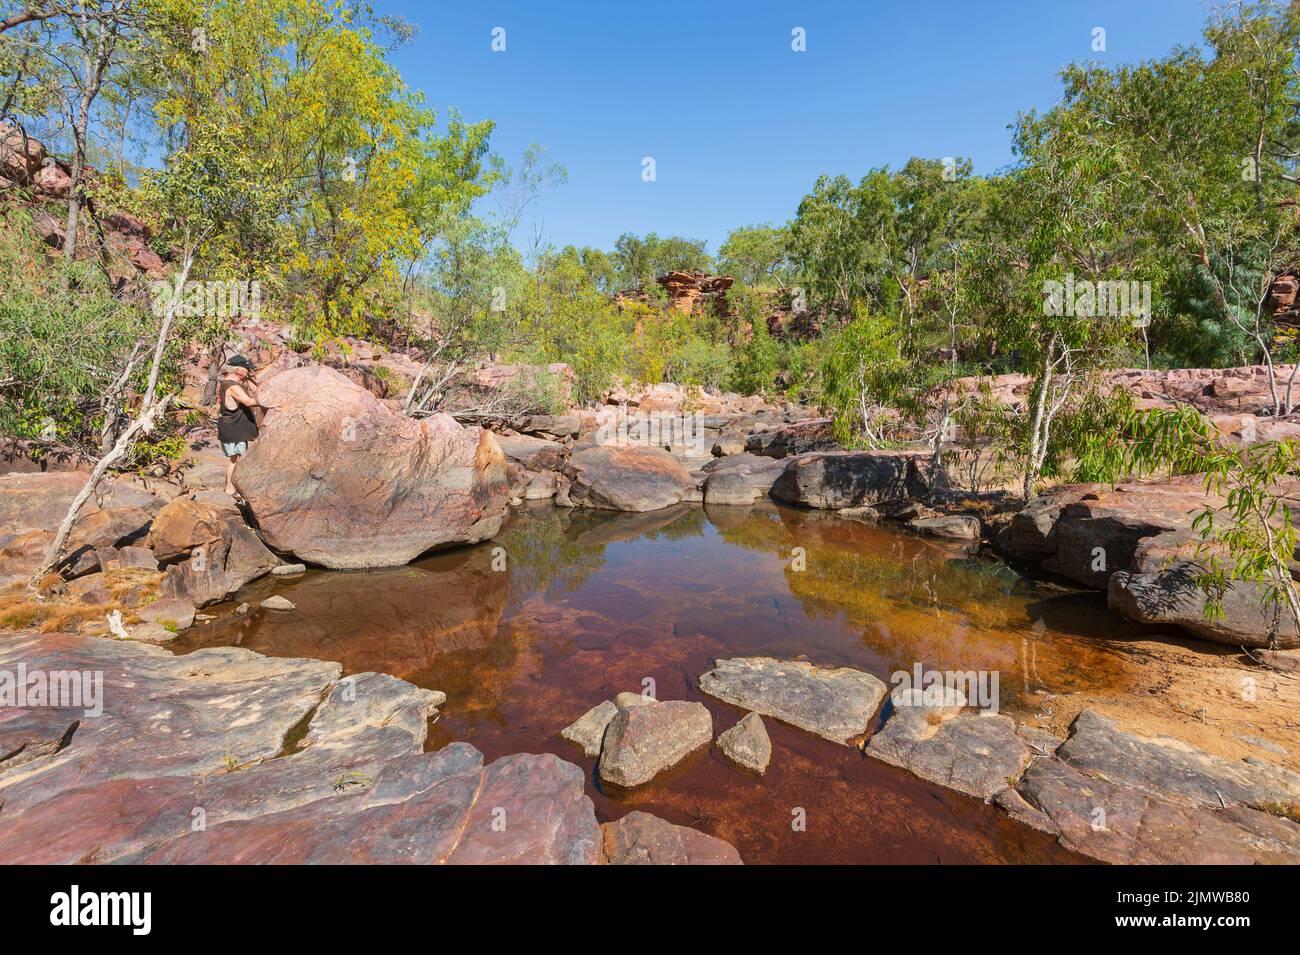 Piscine de roche avec eaux tachées de tanin au parc naturel d'Umbrawarra gorge, territoire du Nord, territoire du Nord, Australie Banque D'Images